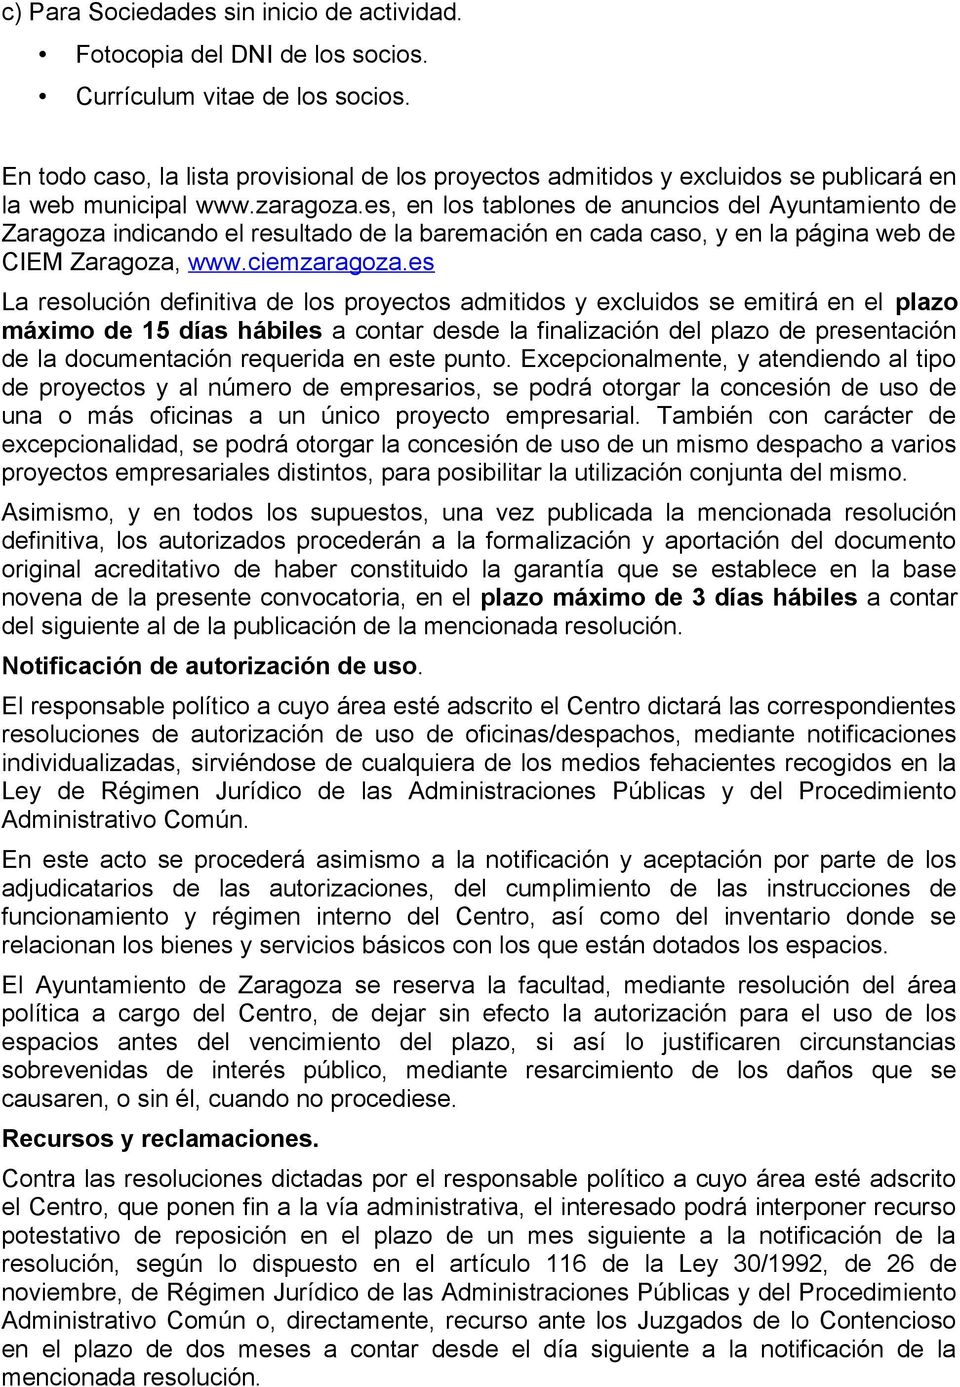 es, en los tablones de anuncios del Ayuntamiento de Zaragoza indicando el resultado de la baremación en cada caso, y en la página web de CIEM Zaragoza, www.ciemzaragoza.